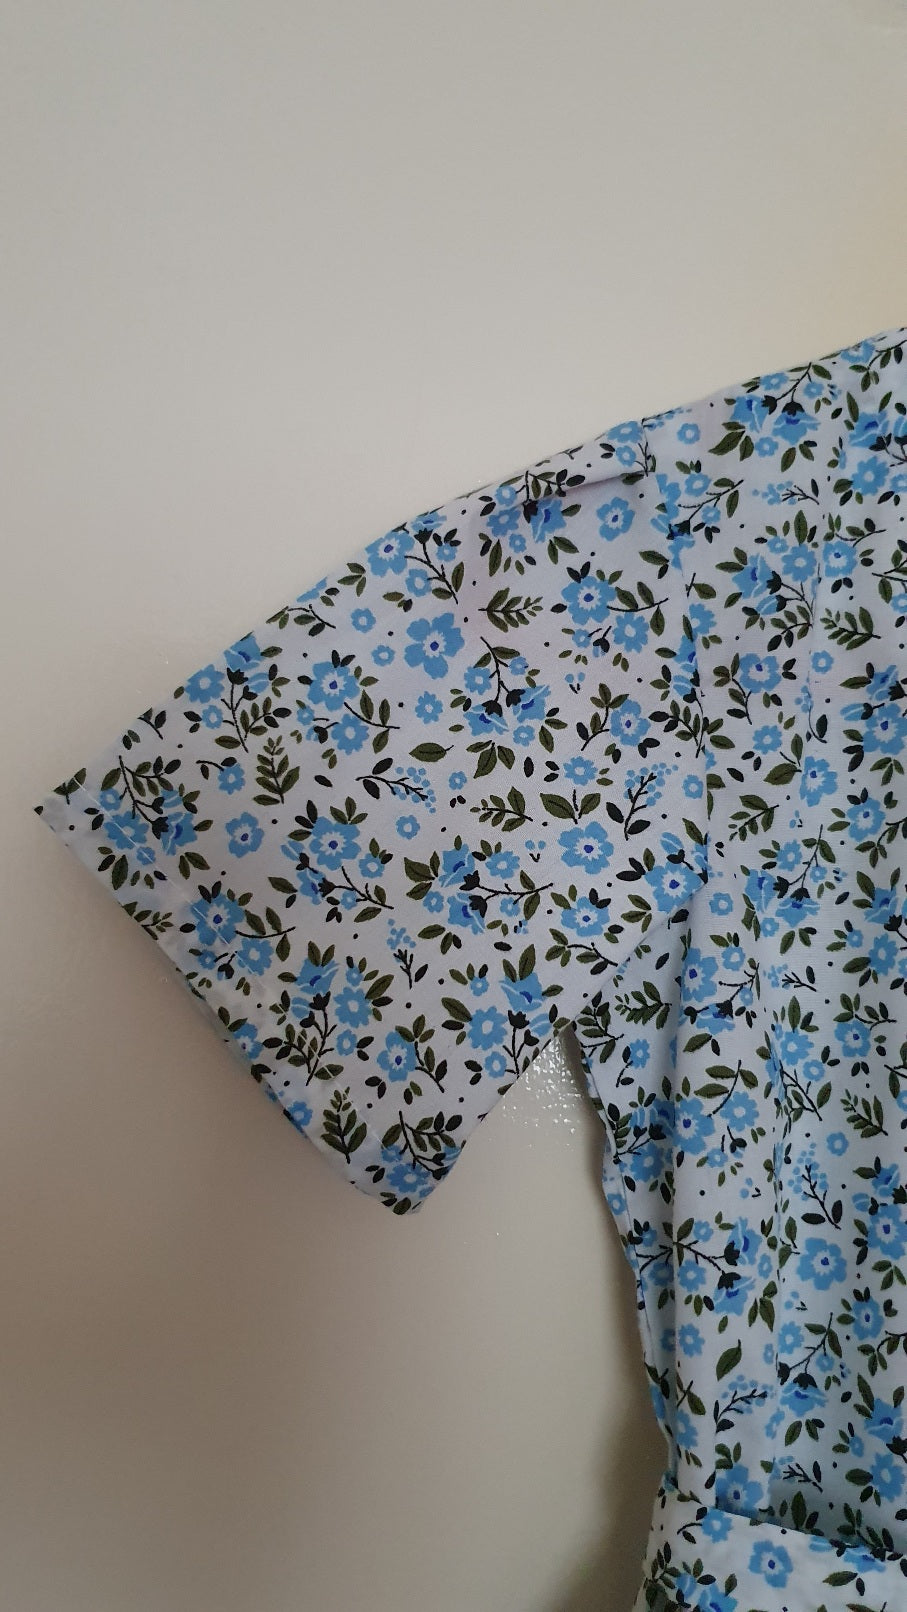 Short-sleeved girl dress, blue flower pattern.